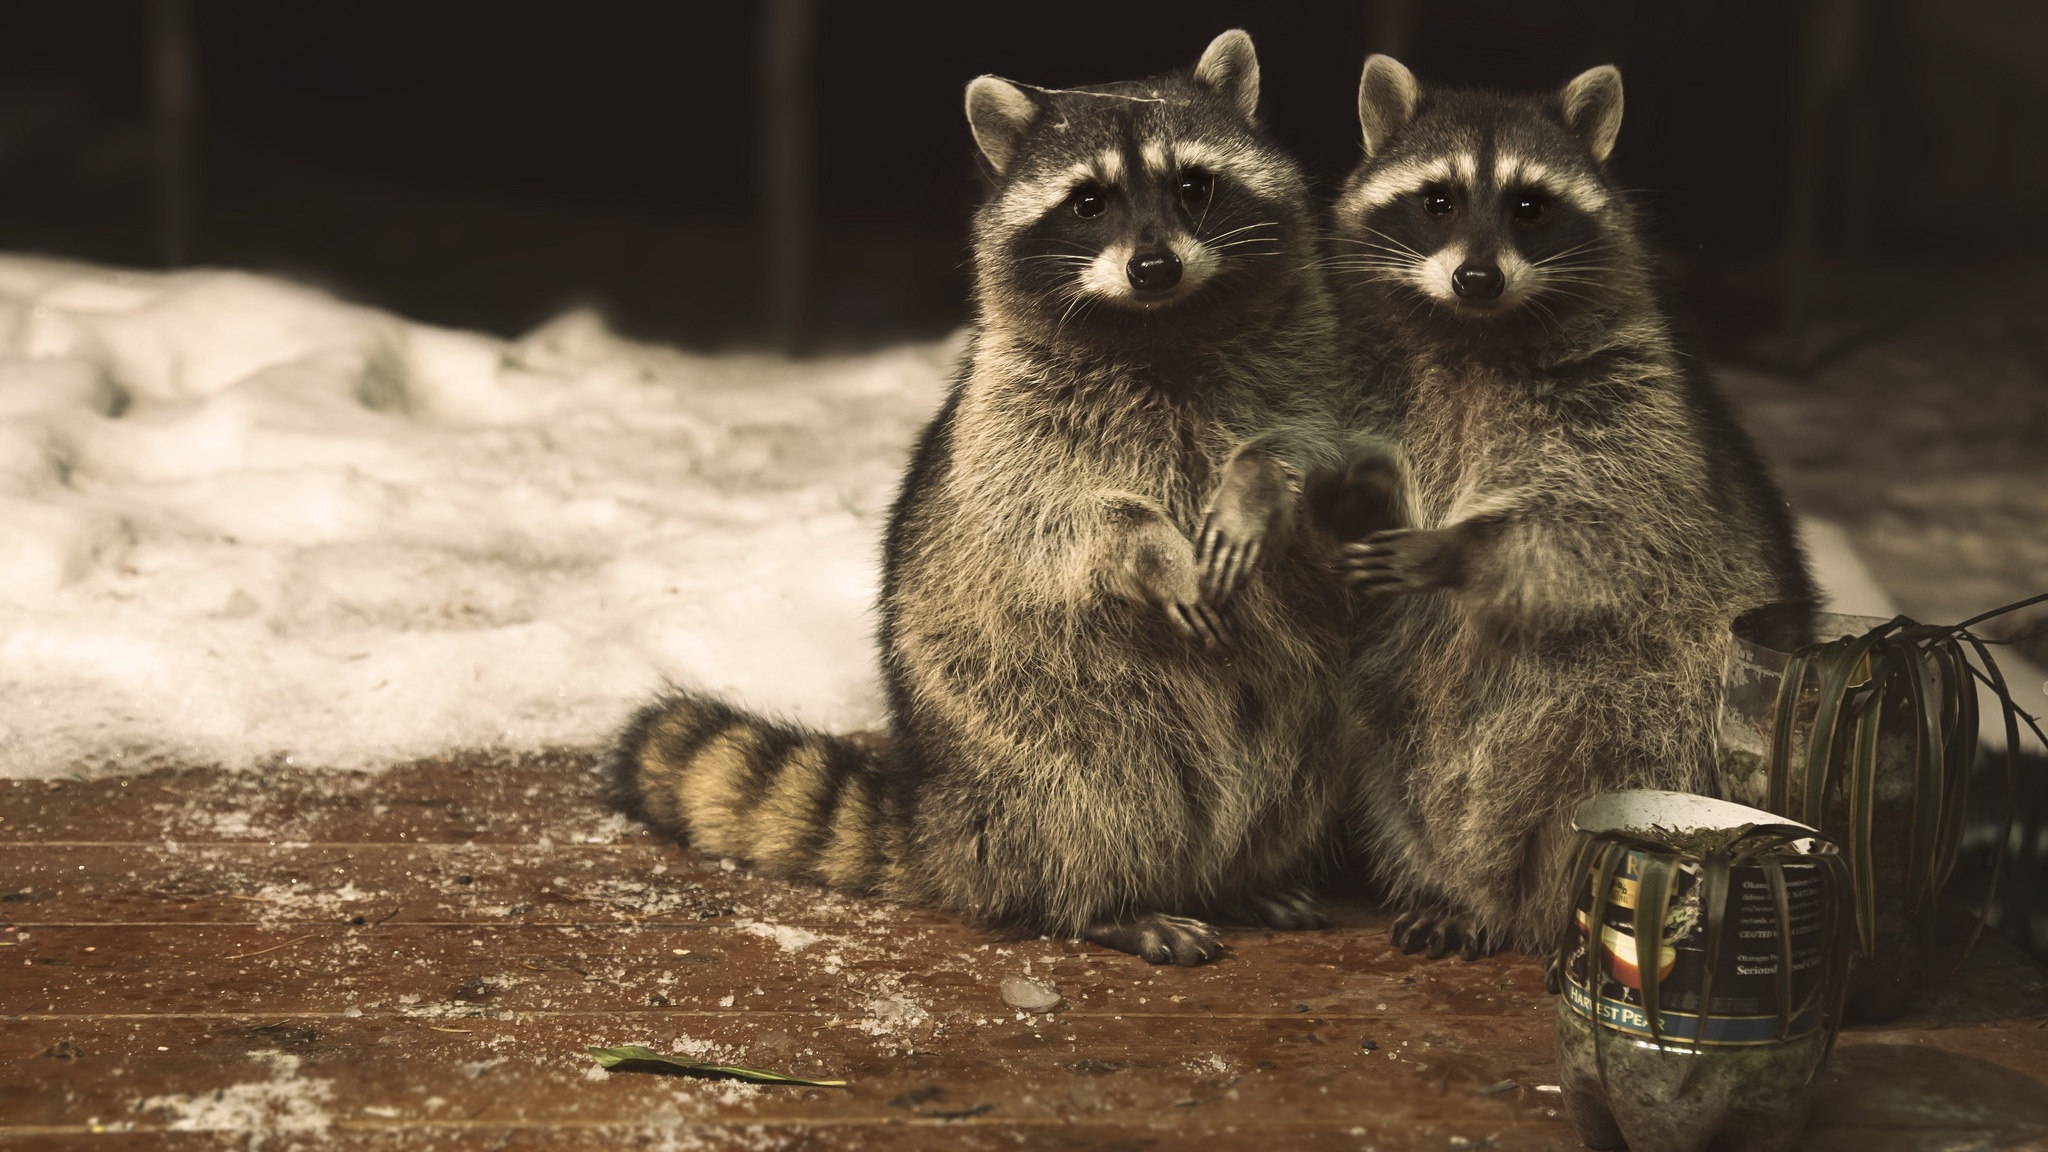 RÃ©sultat de recherche d'images pour "raccoon cute"